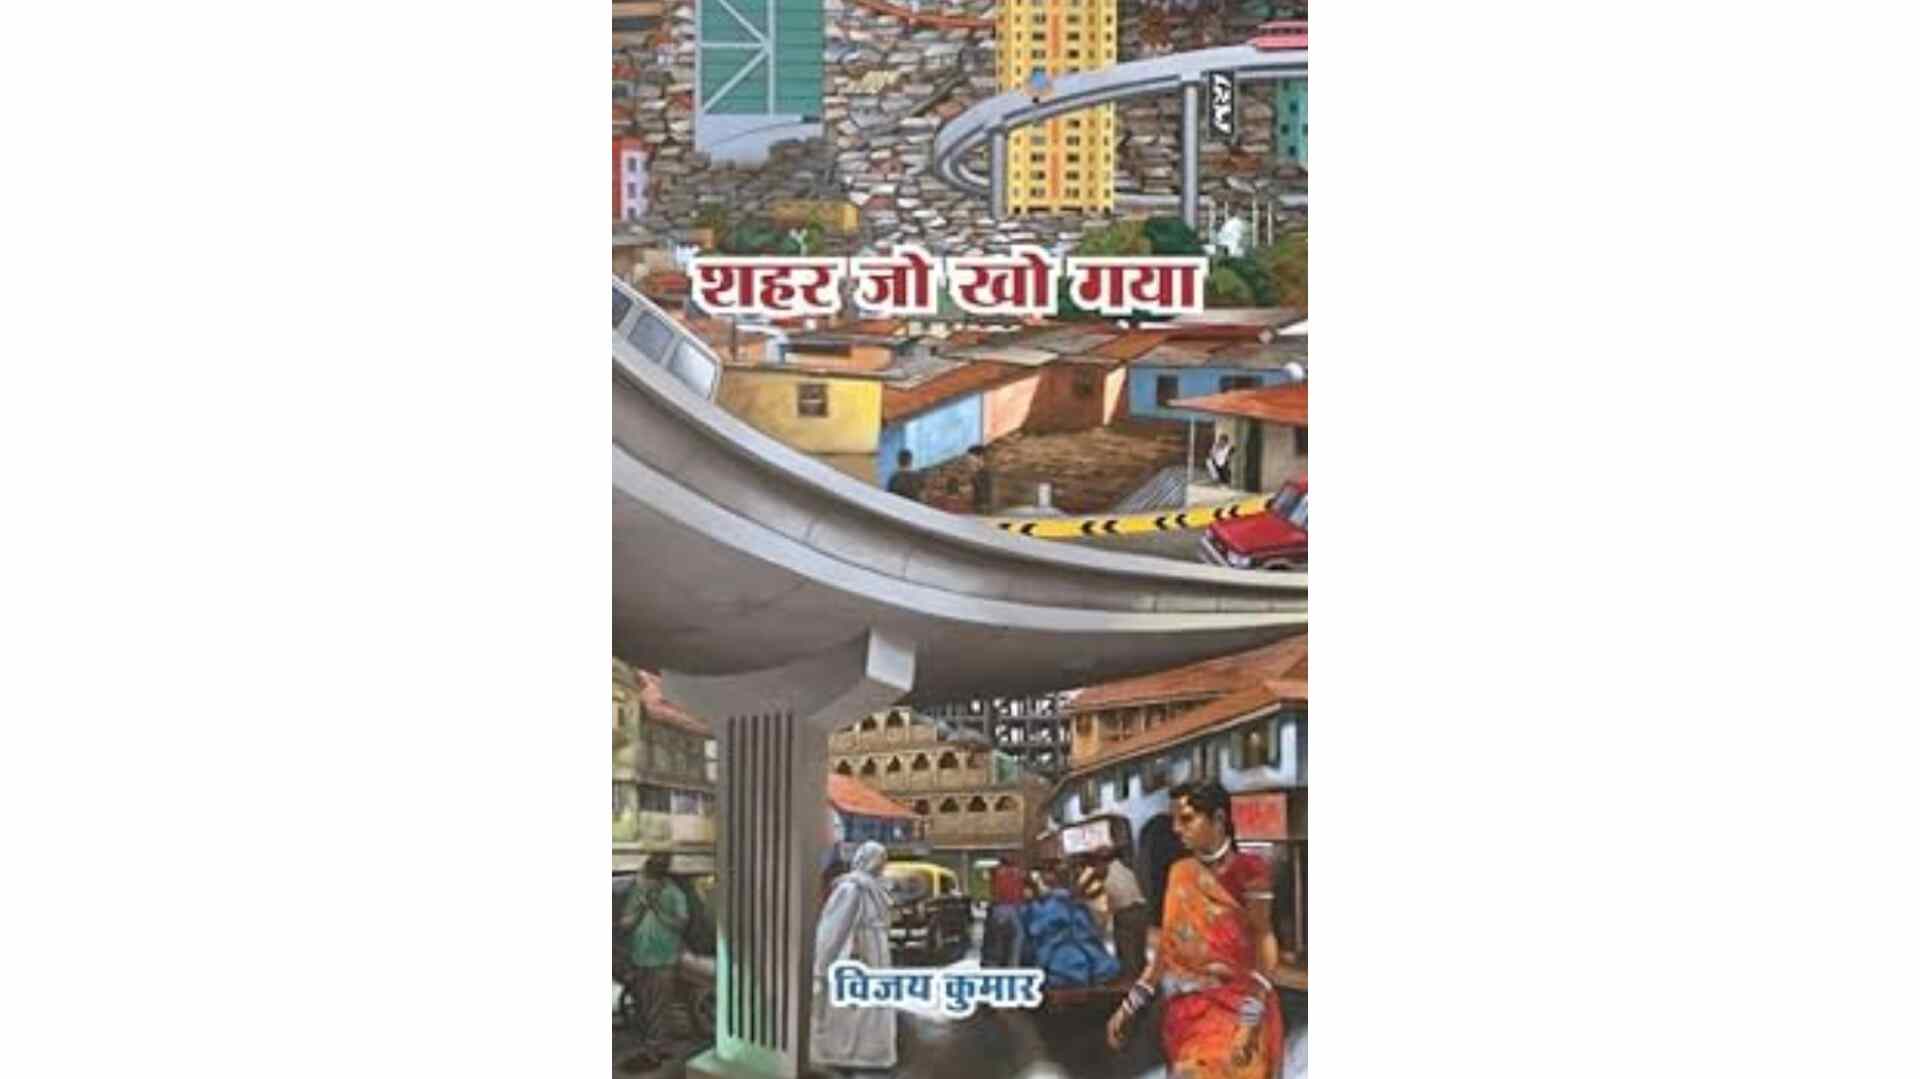 किताब समीक्षा : मुम्बई शहर पर एक अद्भुत किताब : शहर जो खो गया